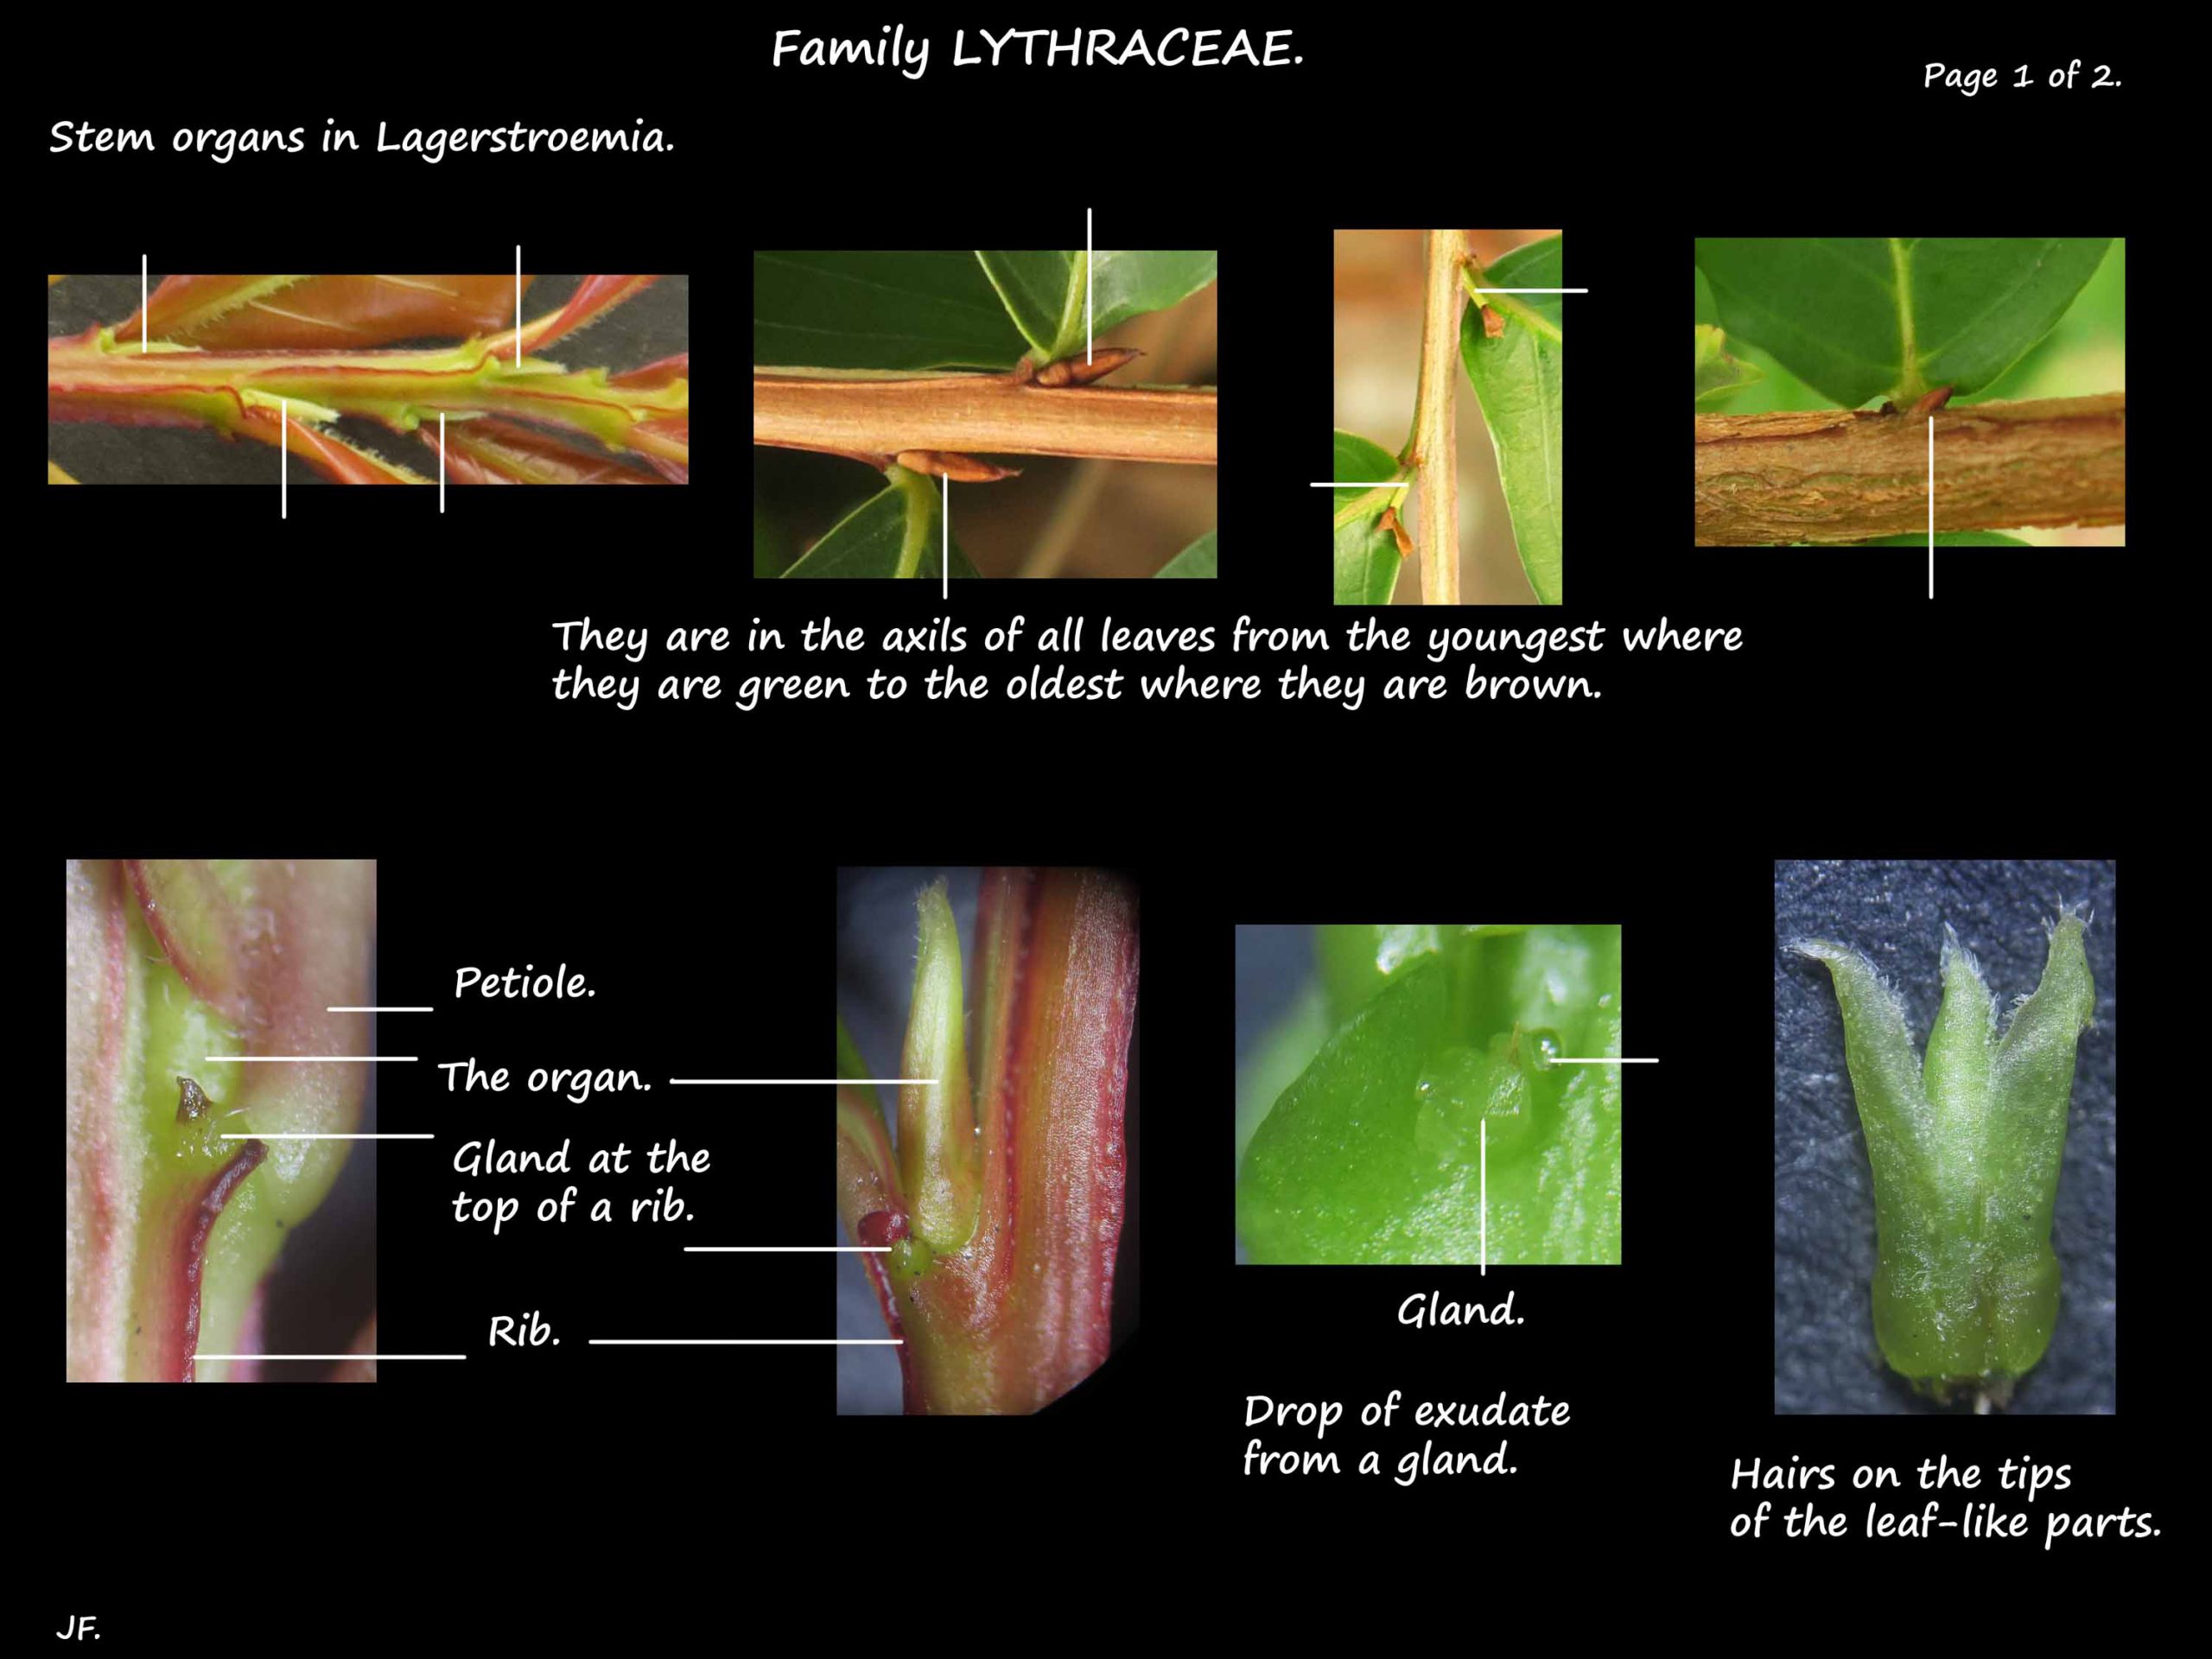 1 Lythraceae stem organs 1